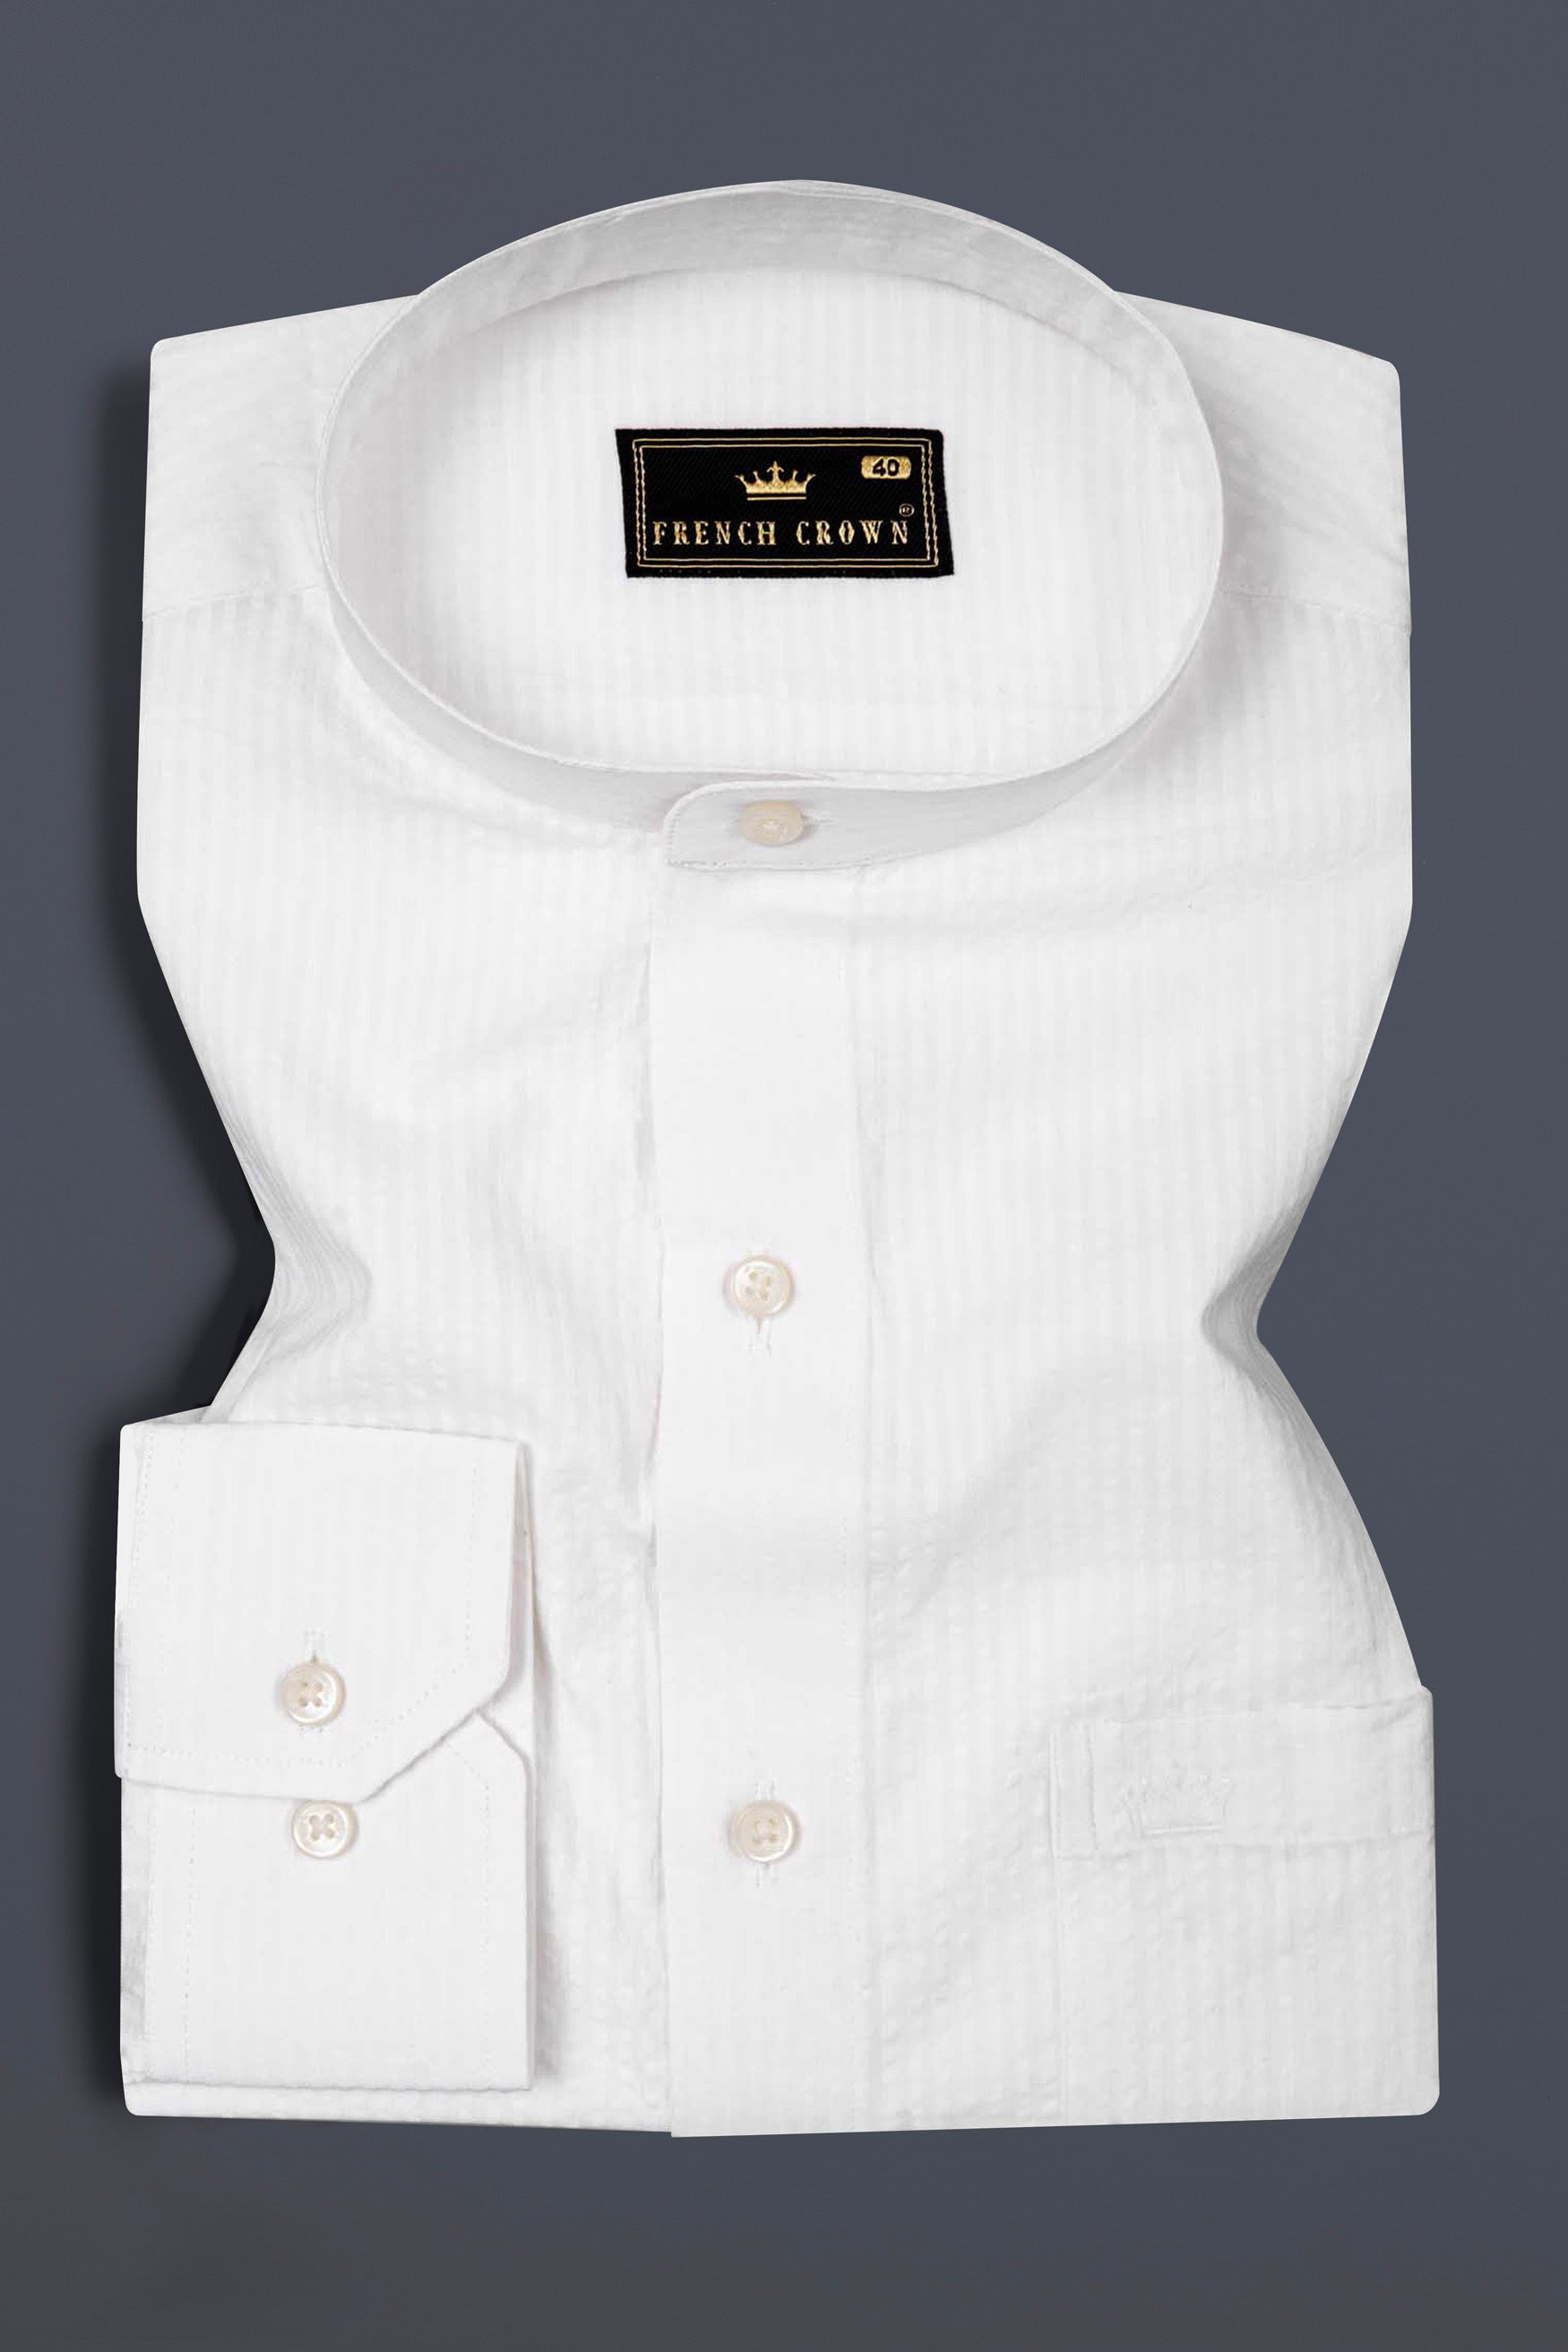 Bright White Subtle Striped Seersucker Premium Giza Cotton Shirt